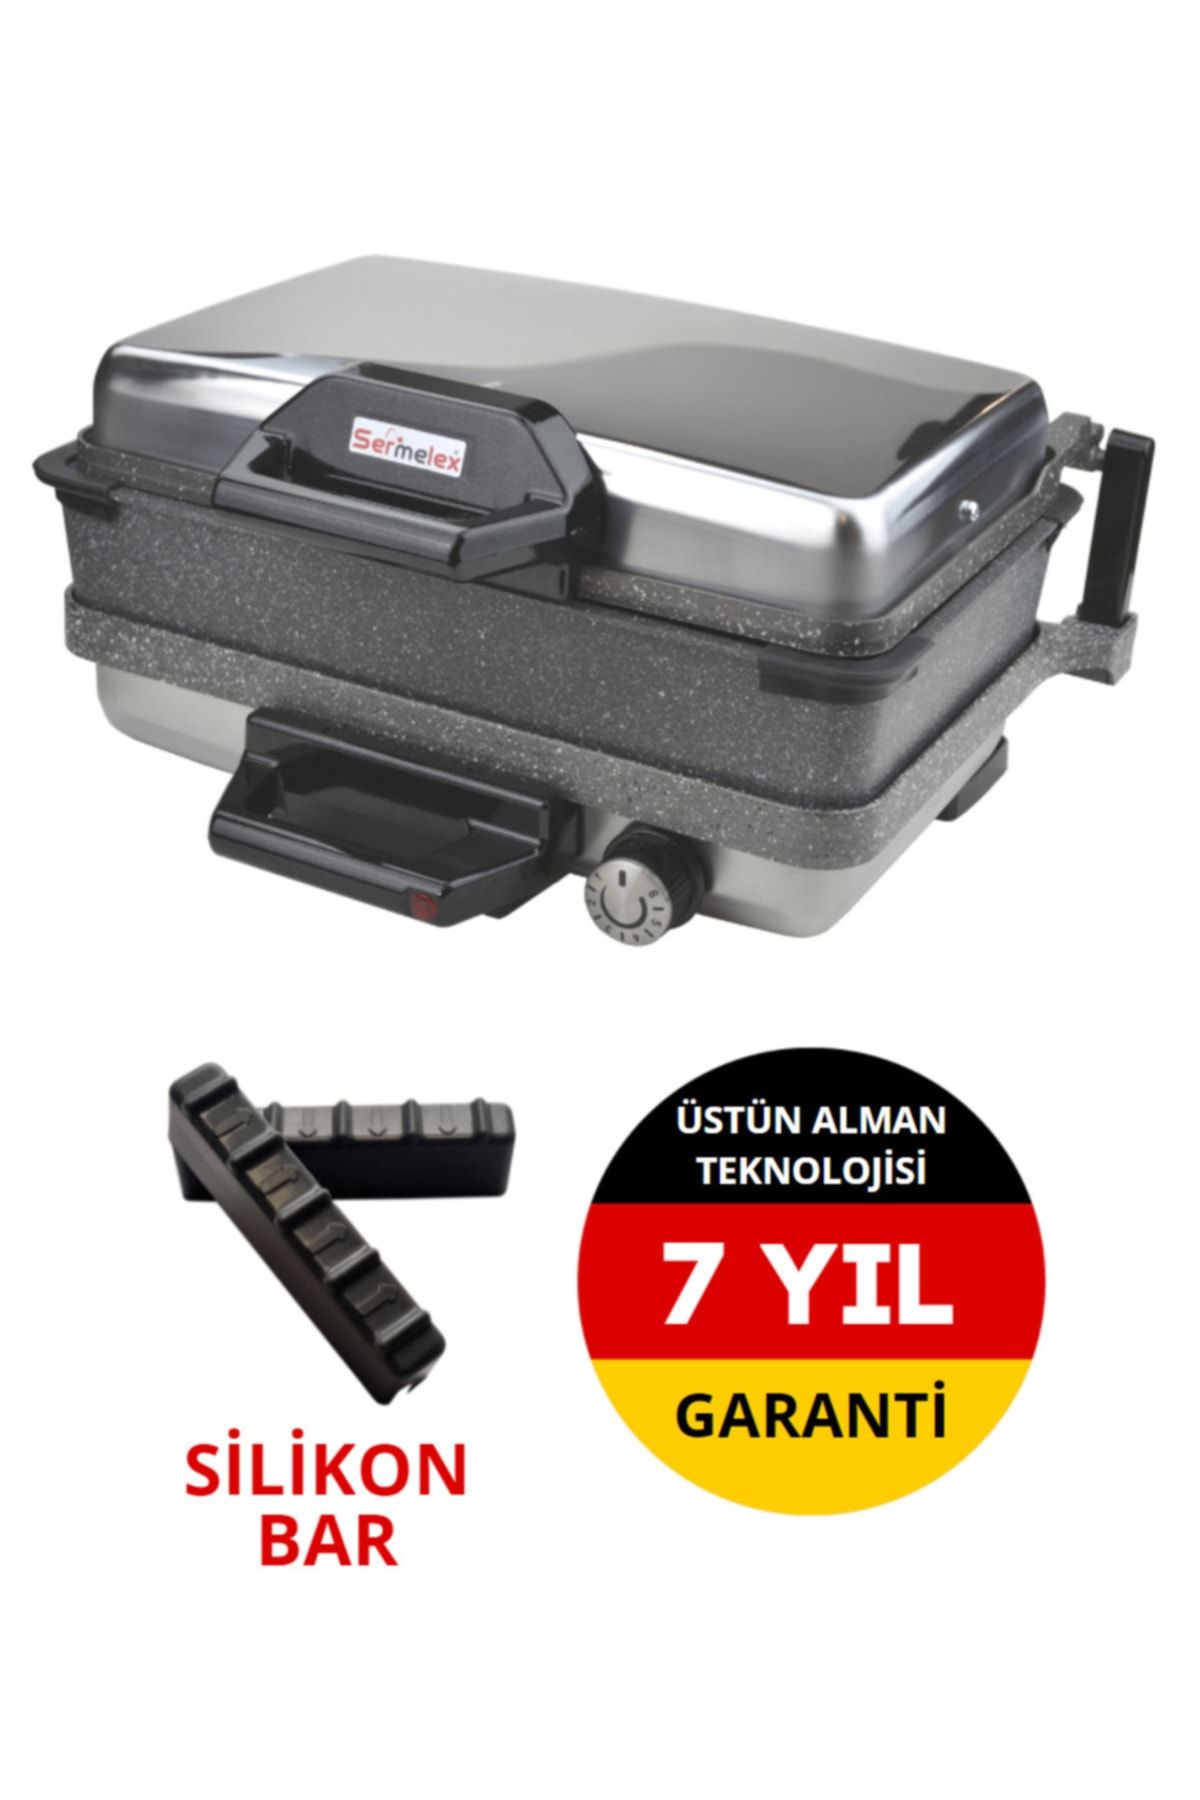 Sermelex Turbo Granit Grill (INOX) Granit Pan Dahil - Silex Bazlama Lahmacun Pizza Izgara Tost Makinesi